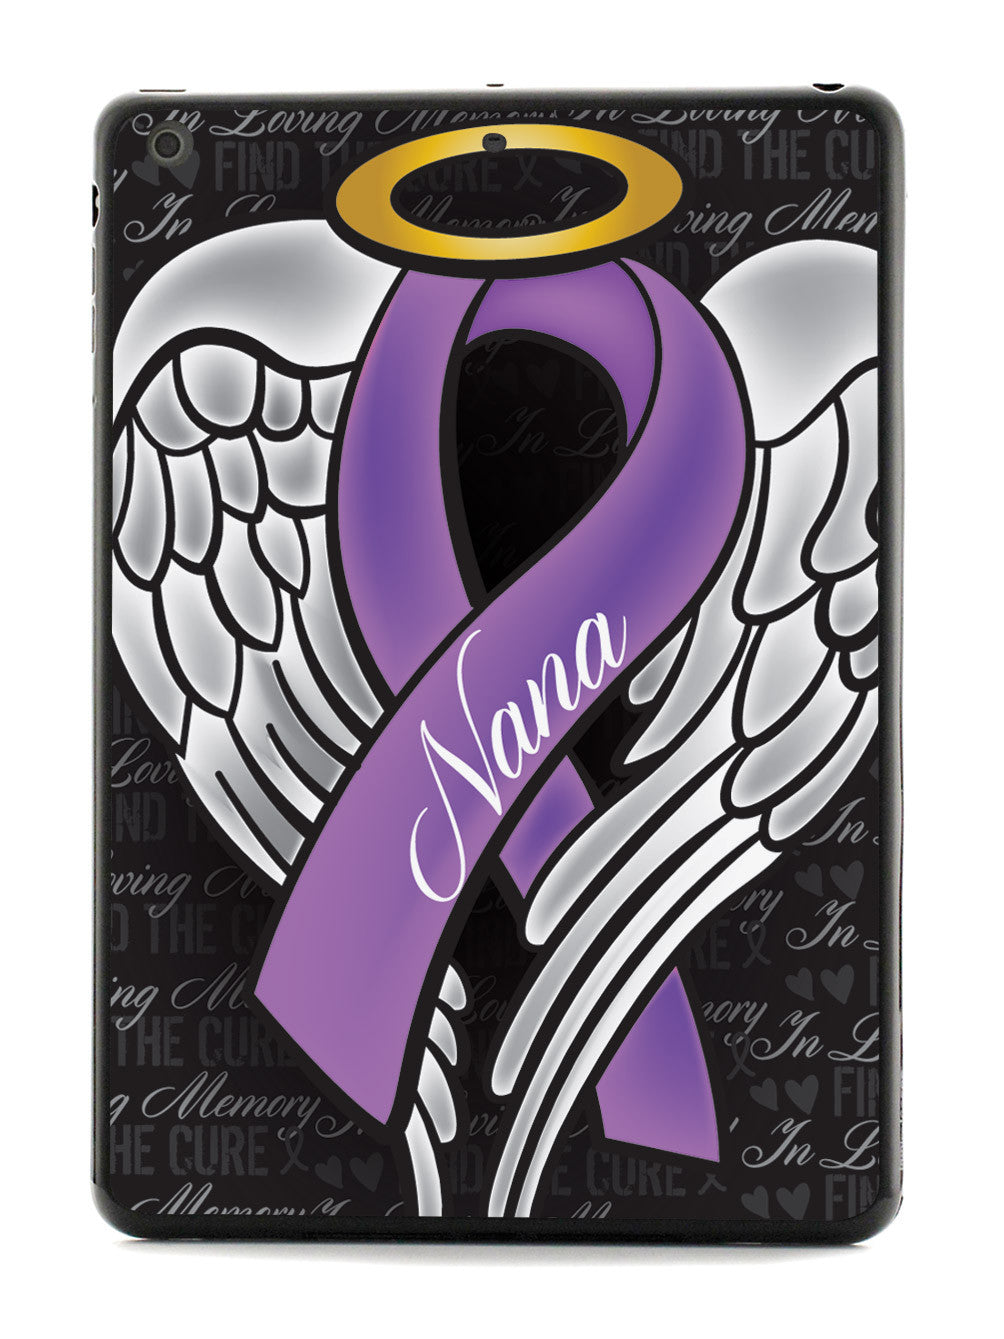 In Loving Memory of My Nana - Purple Ribbon Case